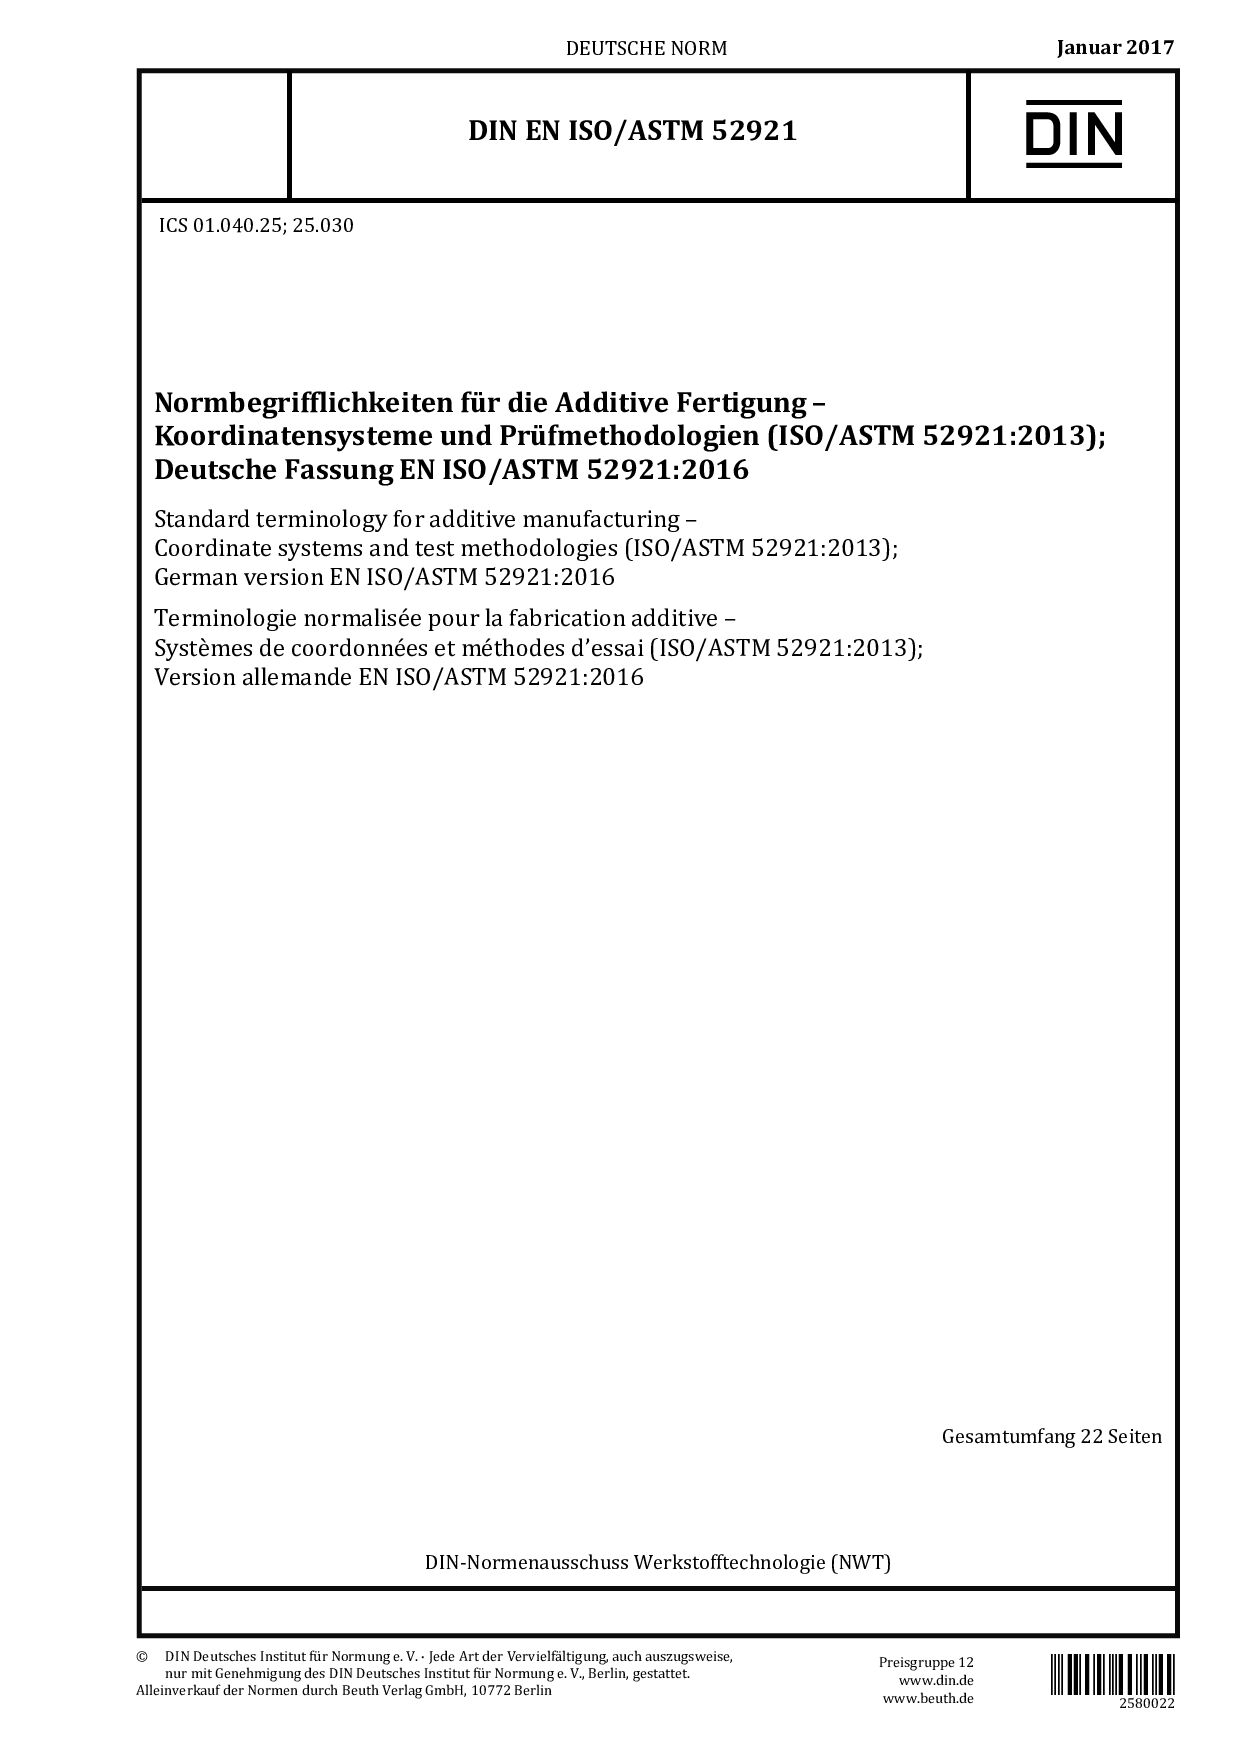 DIN EN ISO/ASTM 52921:2017封面图